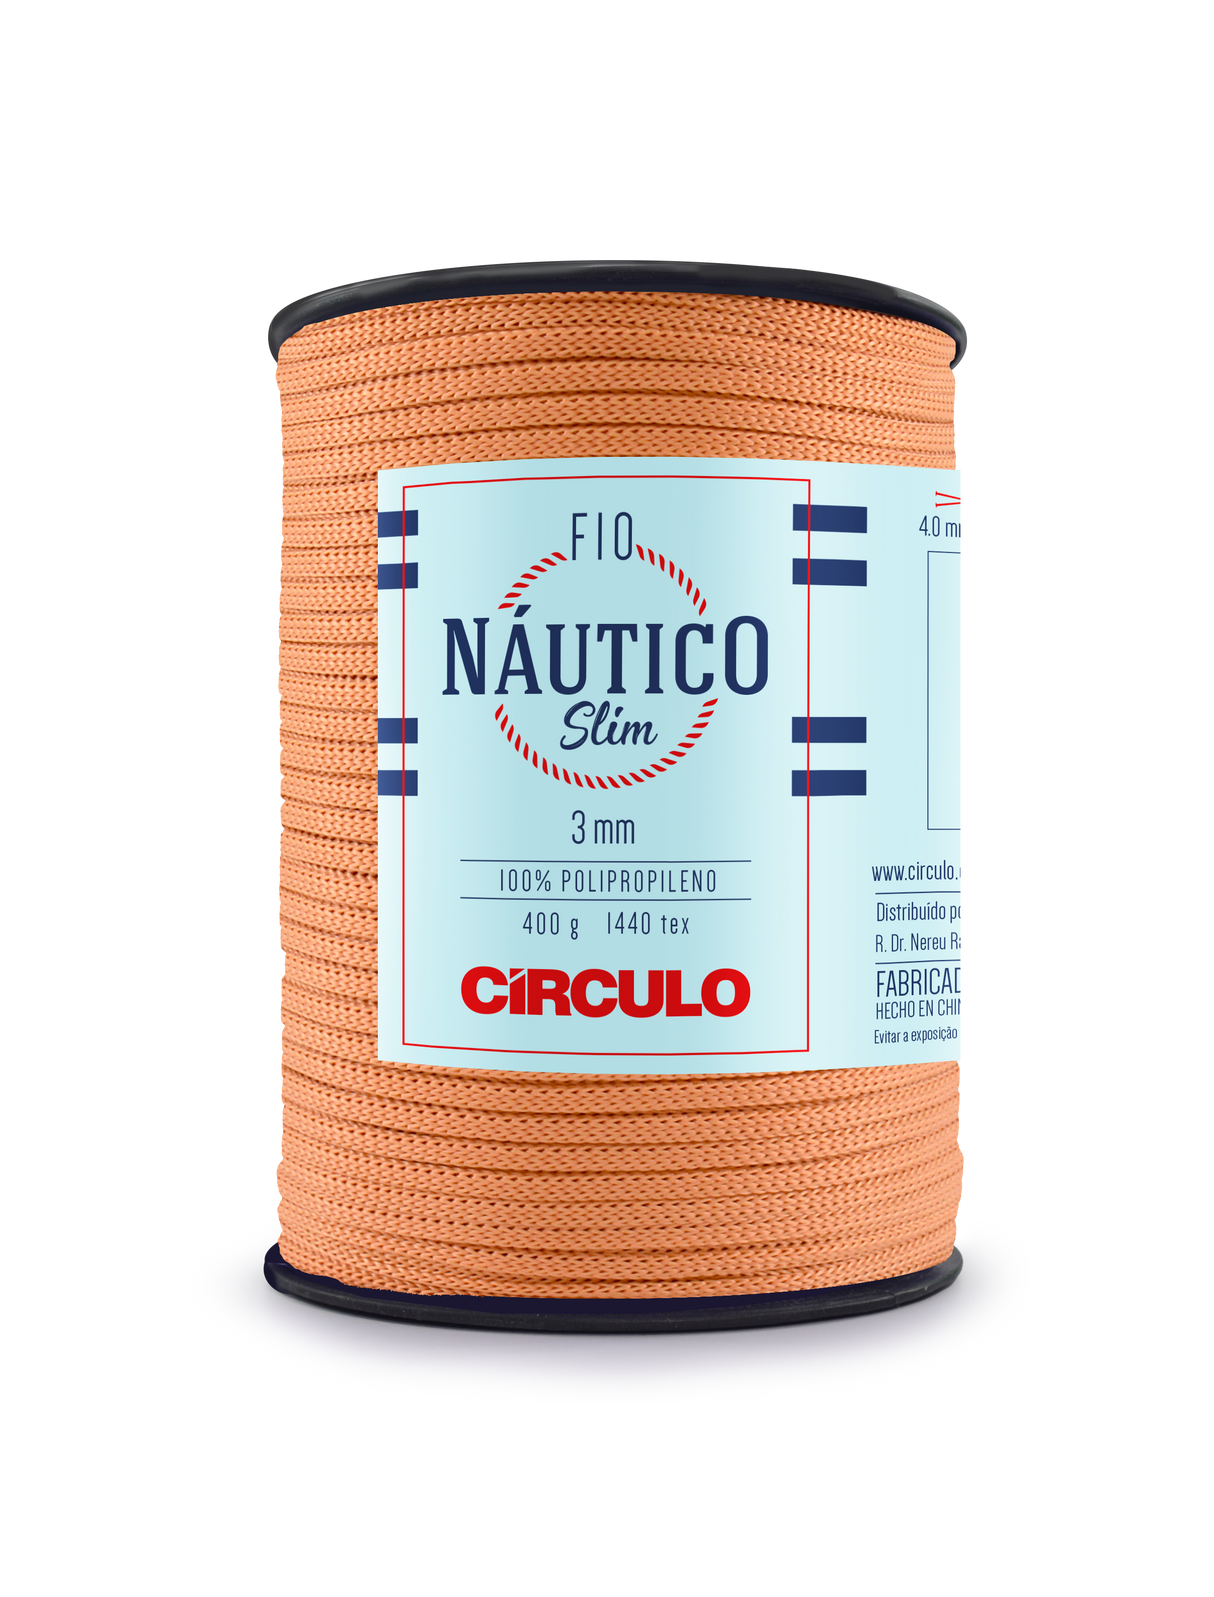 Circulo Fio Nautico Slim 3 mm color 7529